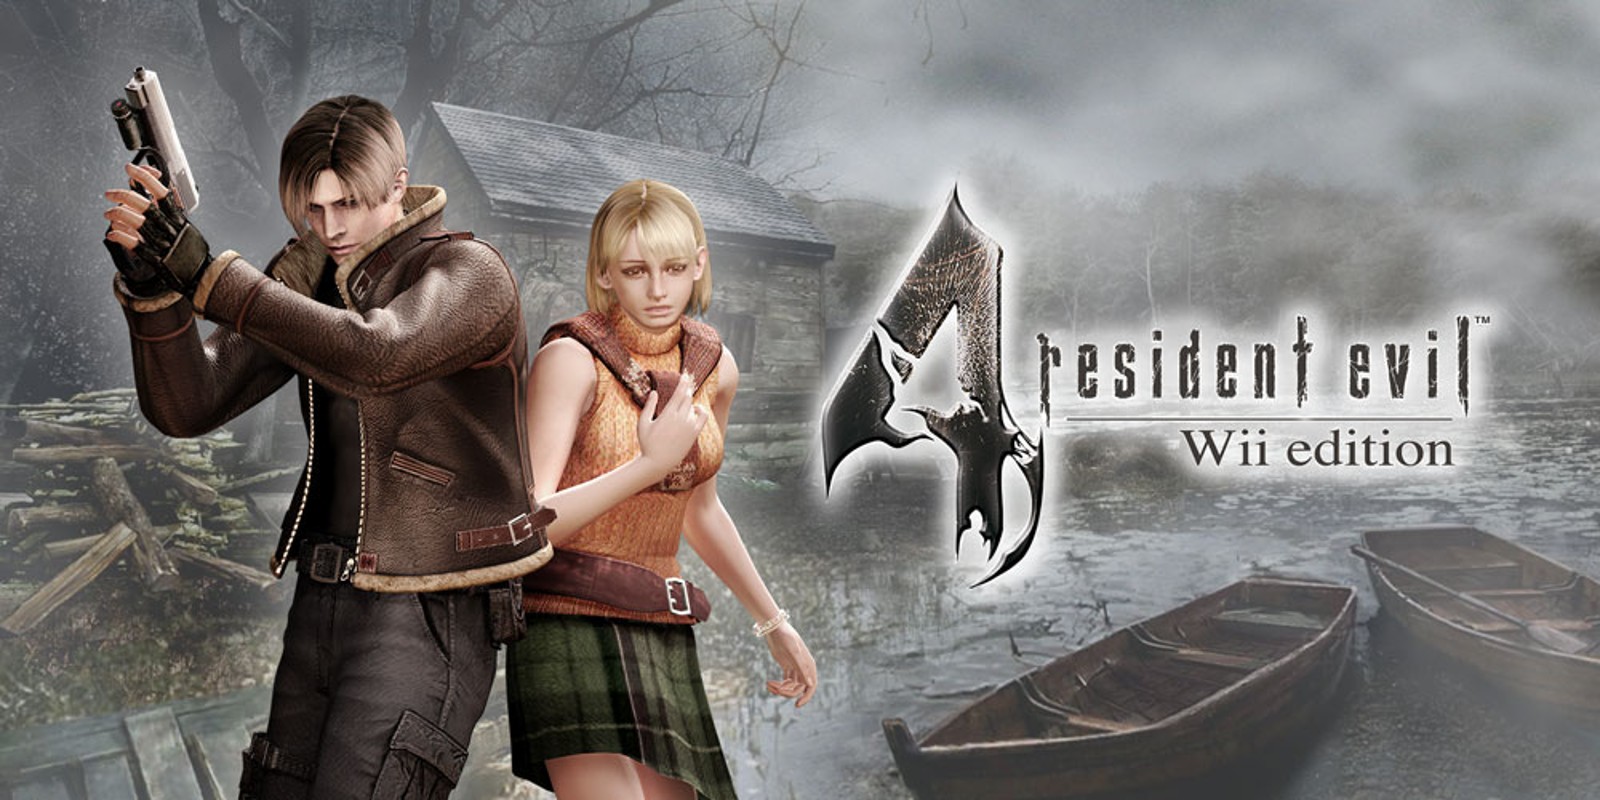 Прохождение игры Resident Evil 4 - Ultimate HD Edition # 33 (Русская версия игры) PC - Ver. HD Full.